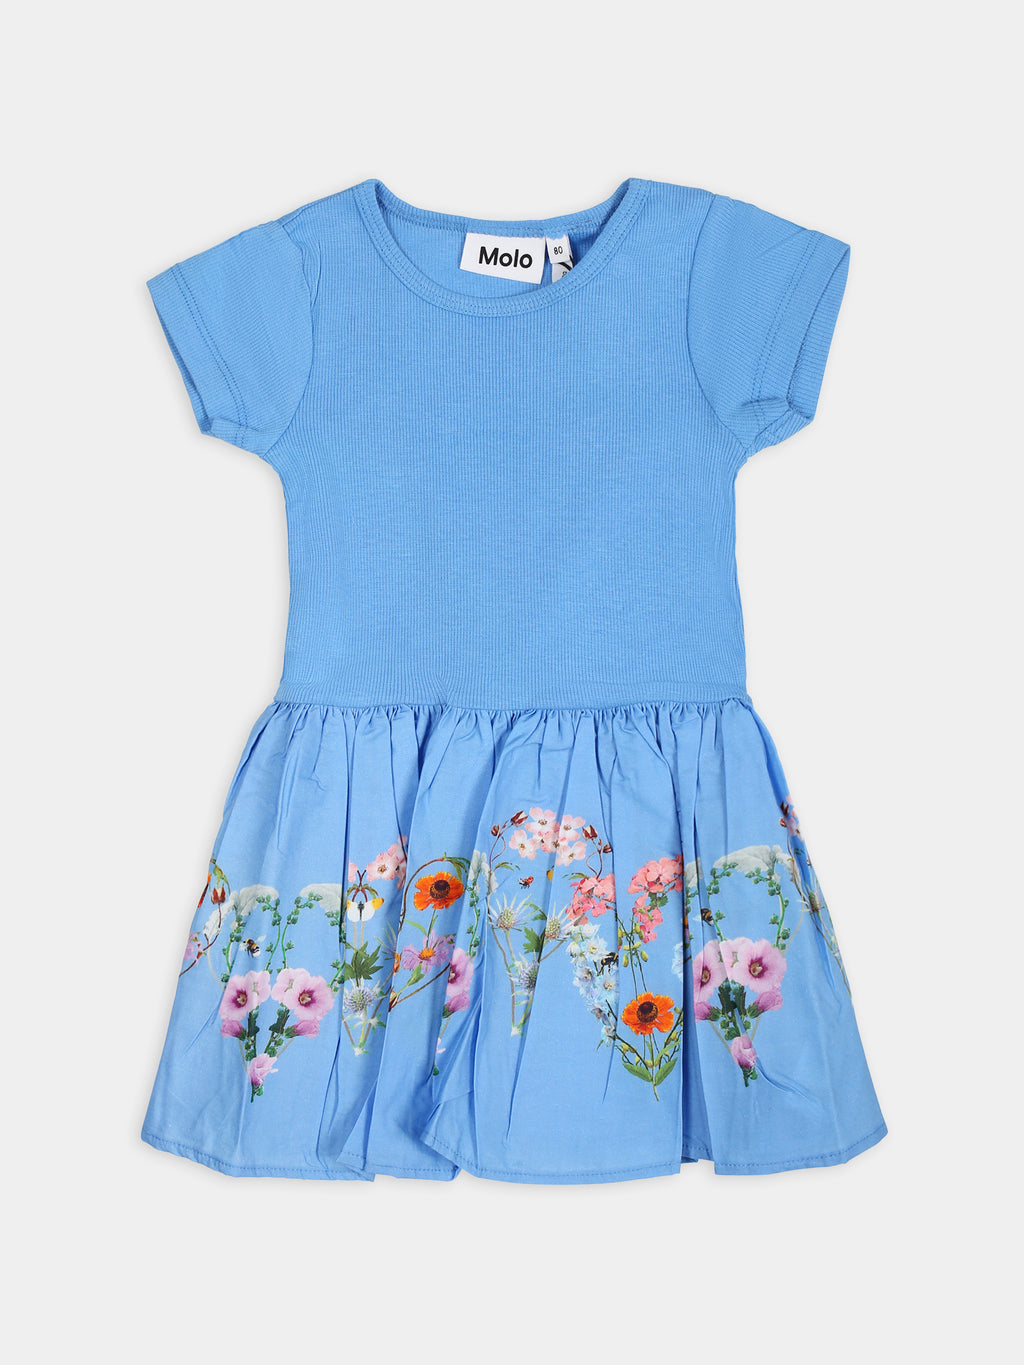 Vestito Carin casual azzurro per neonata con fantasia floreale